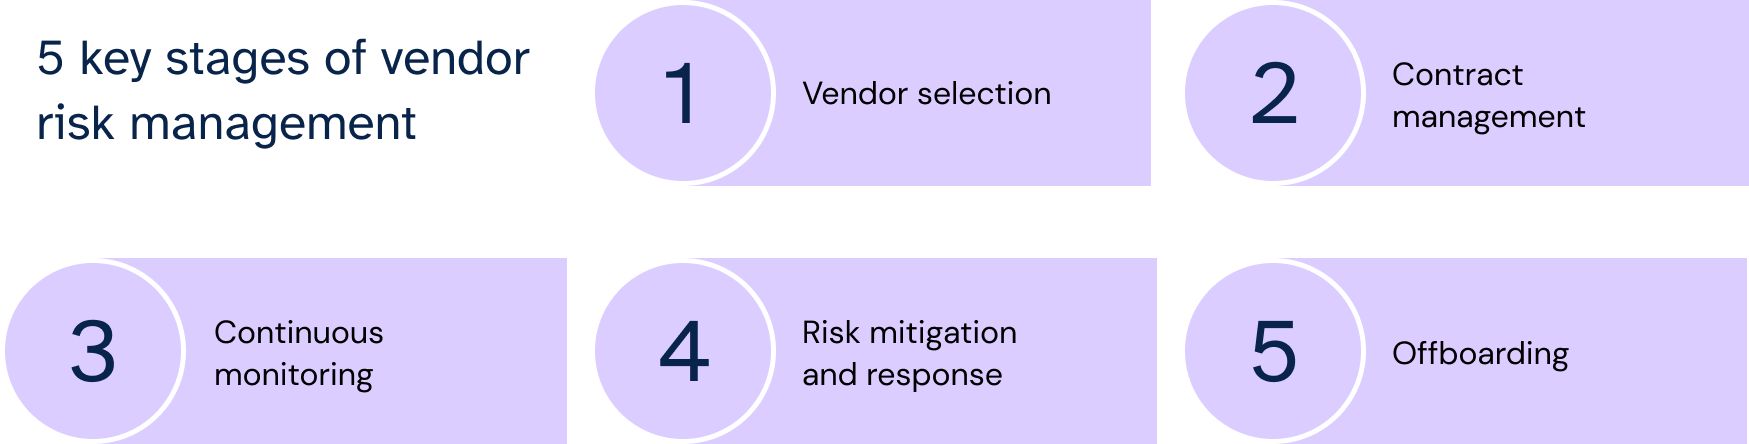 5 key stages of vendor risk management